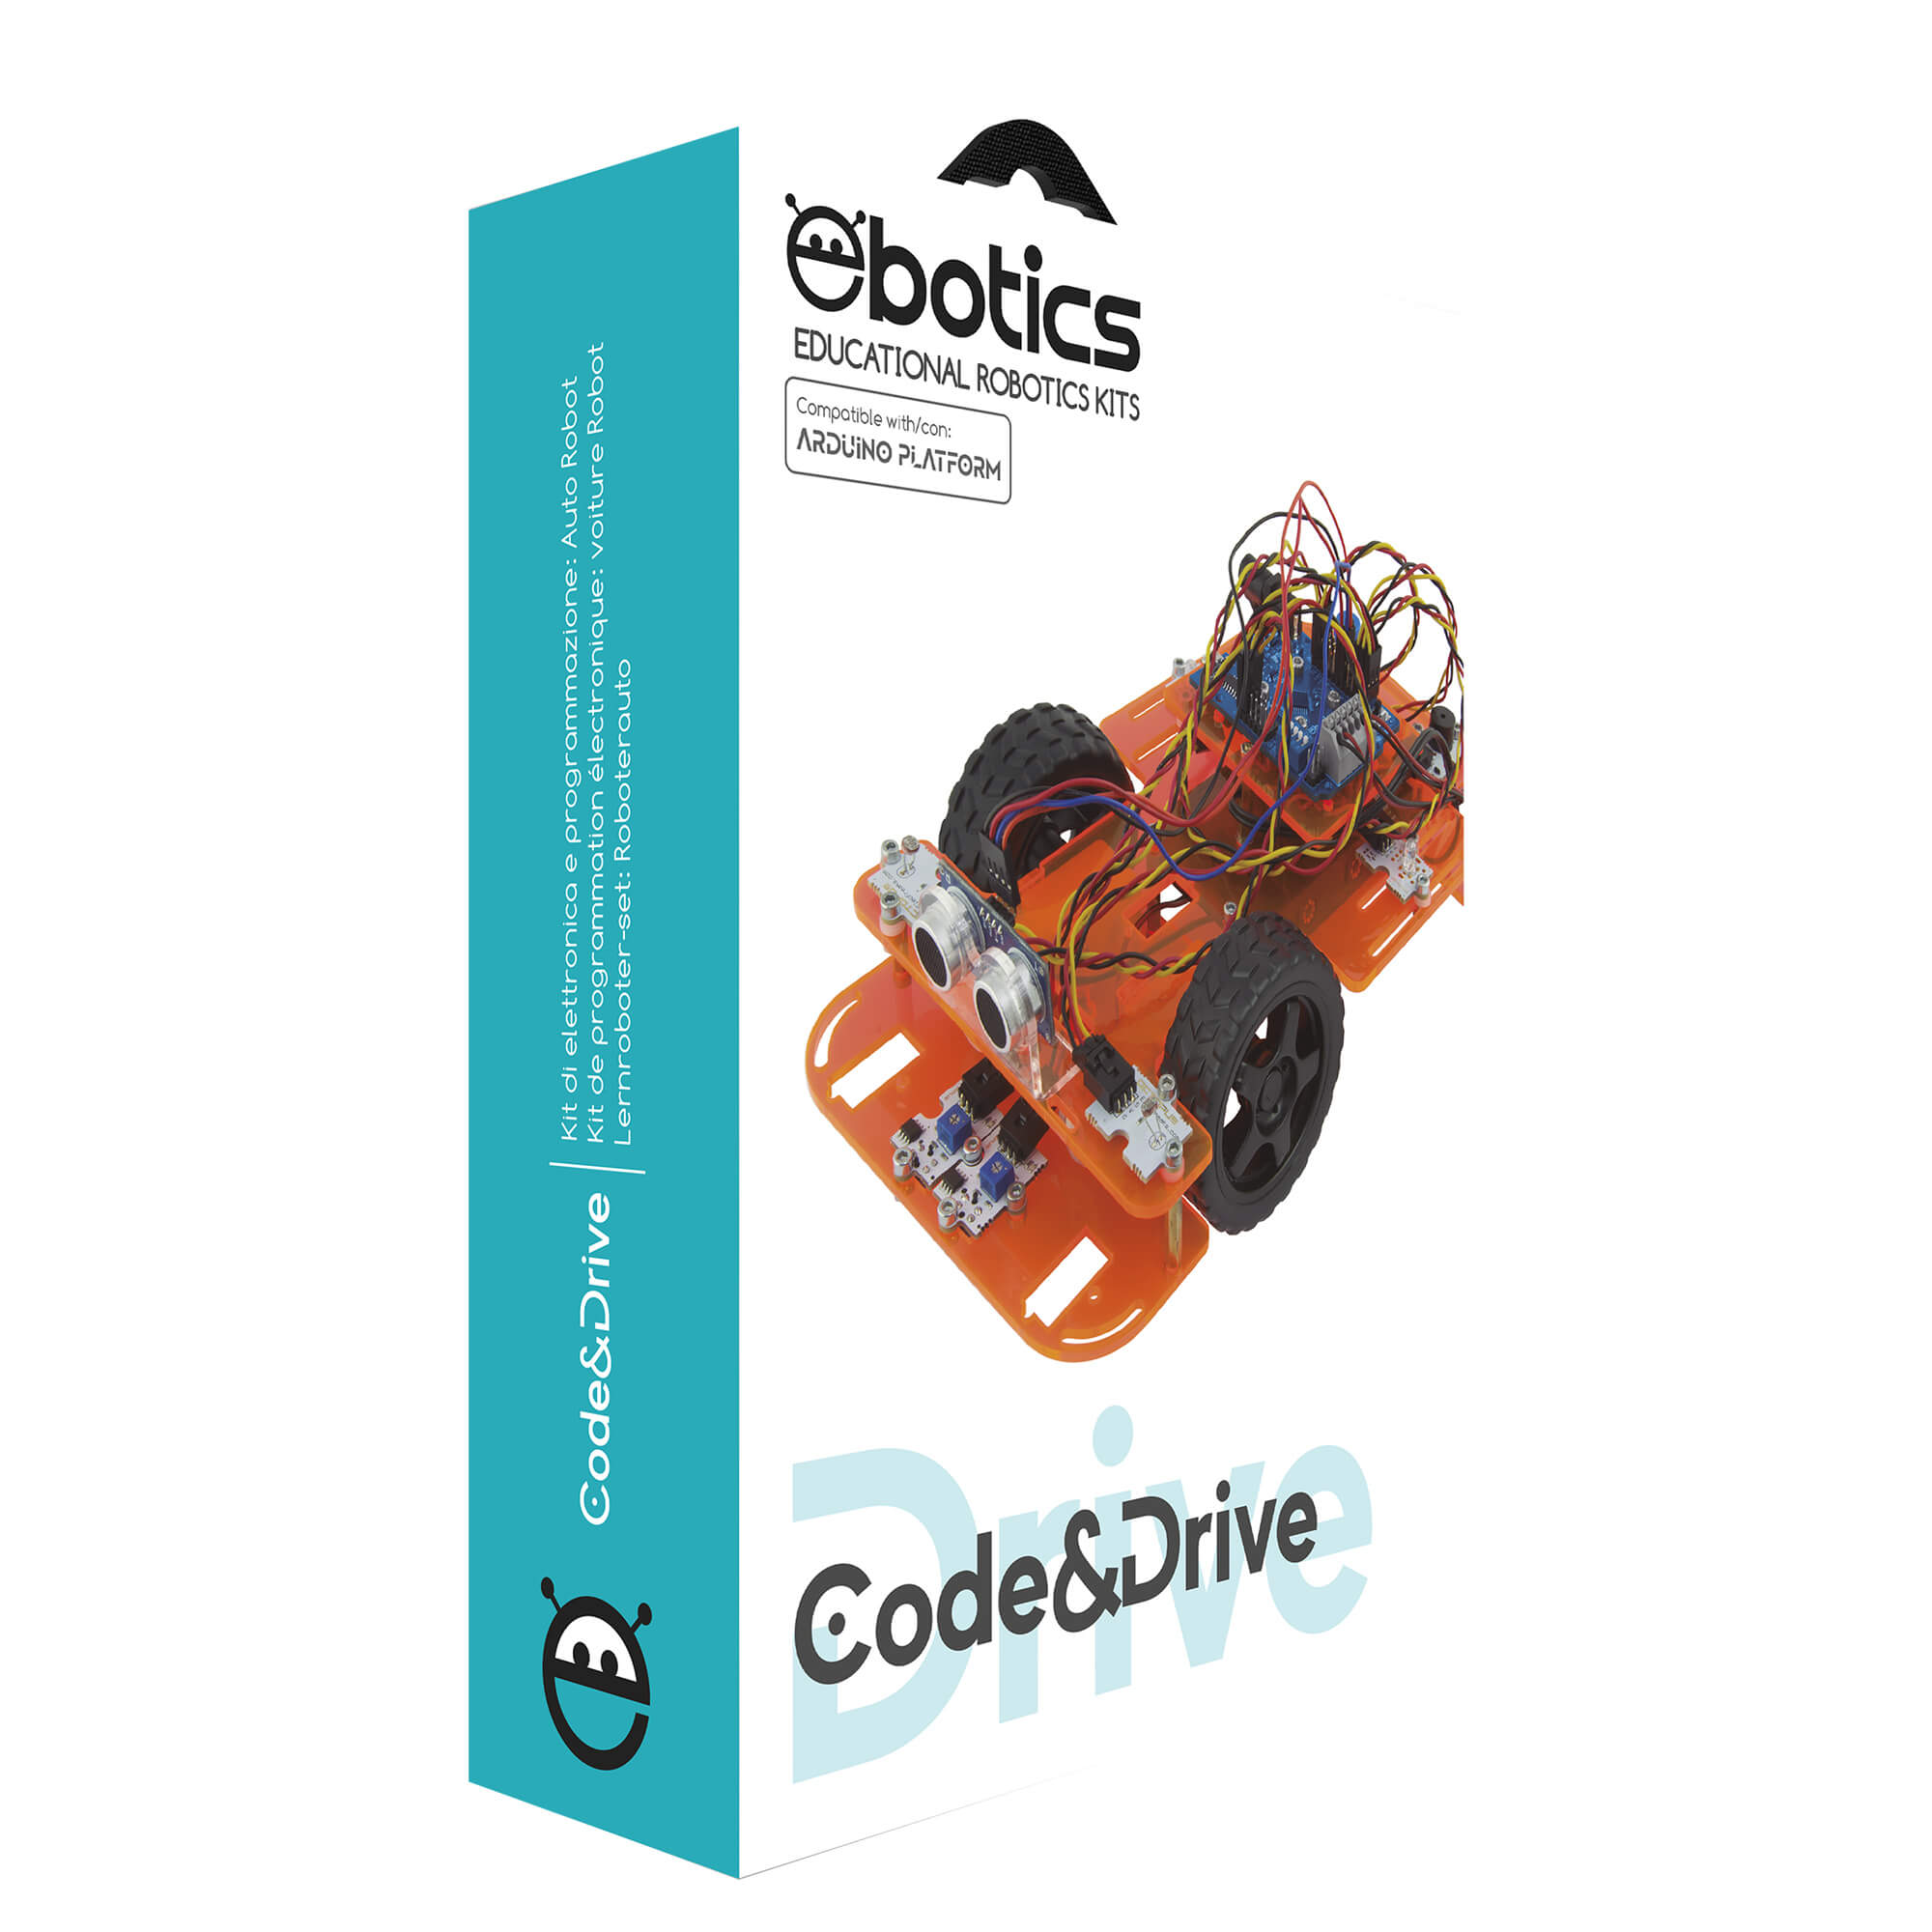 Kit de robótica y programación DiY con el cual construyes un coche robot y programas su comportamiento Ebotics Code&Drive 